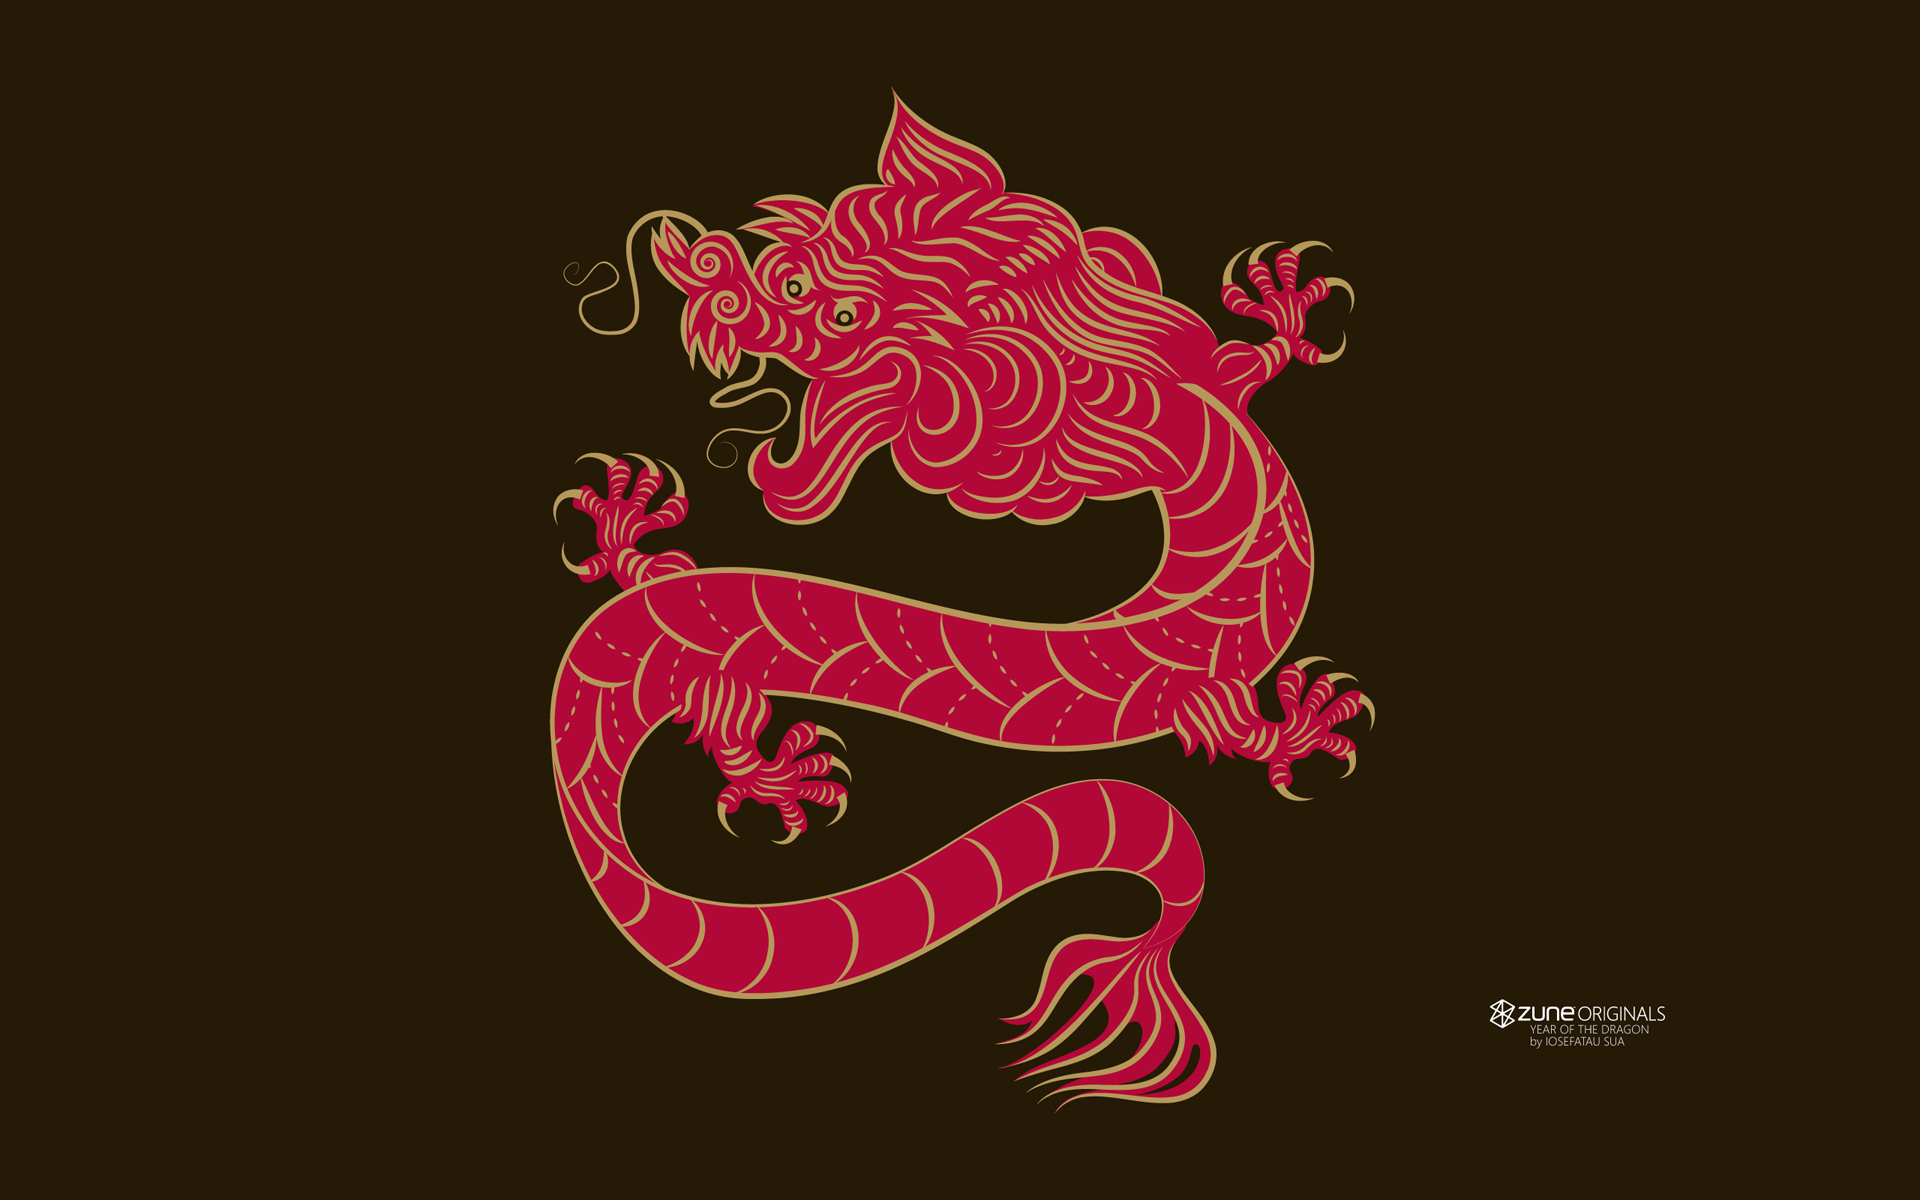 Chinese Horoscope Wallpaper